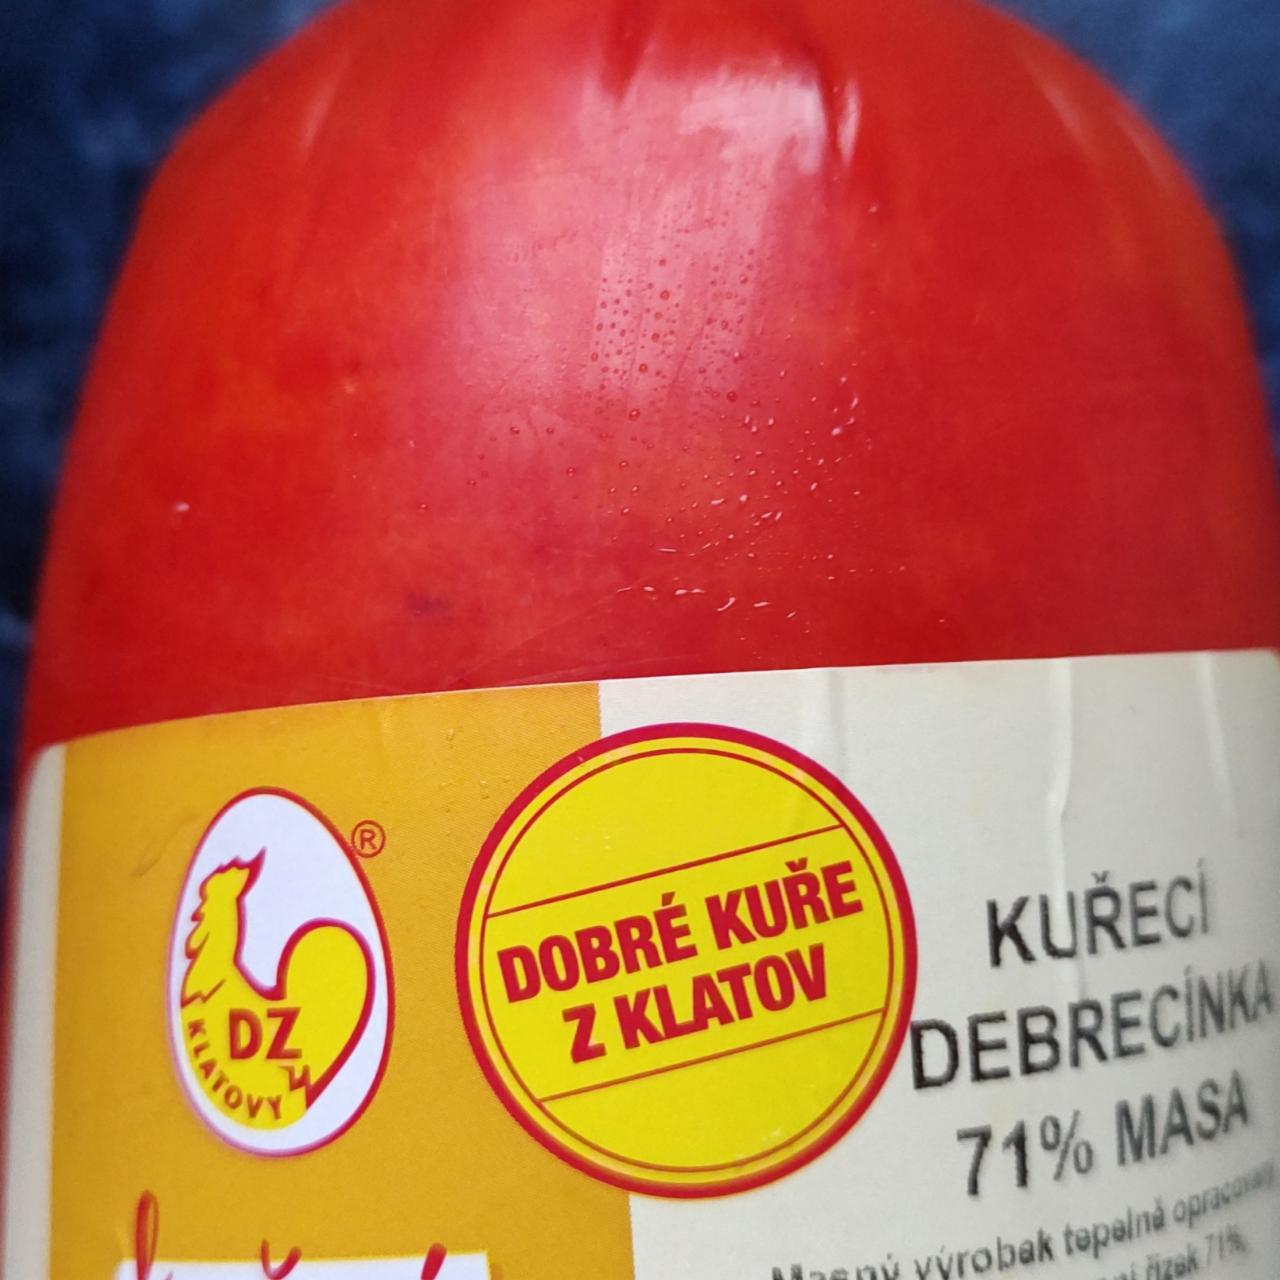 Fotografie - Kuřecí debrecínka 71% masa DZ Klatovy